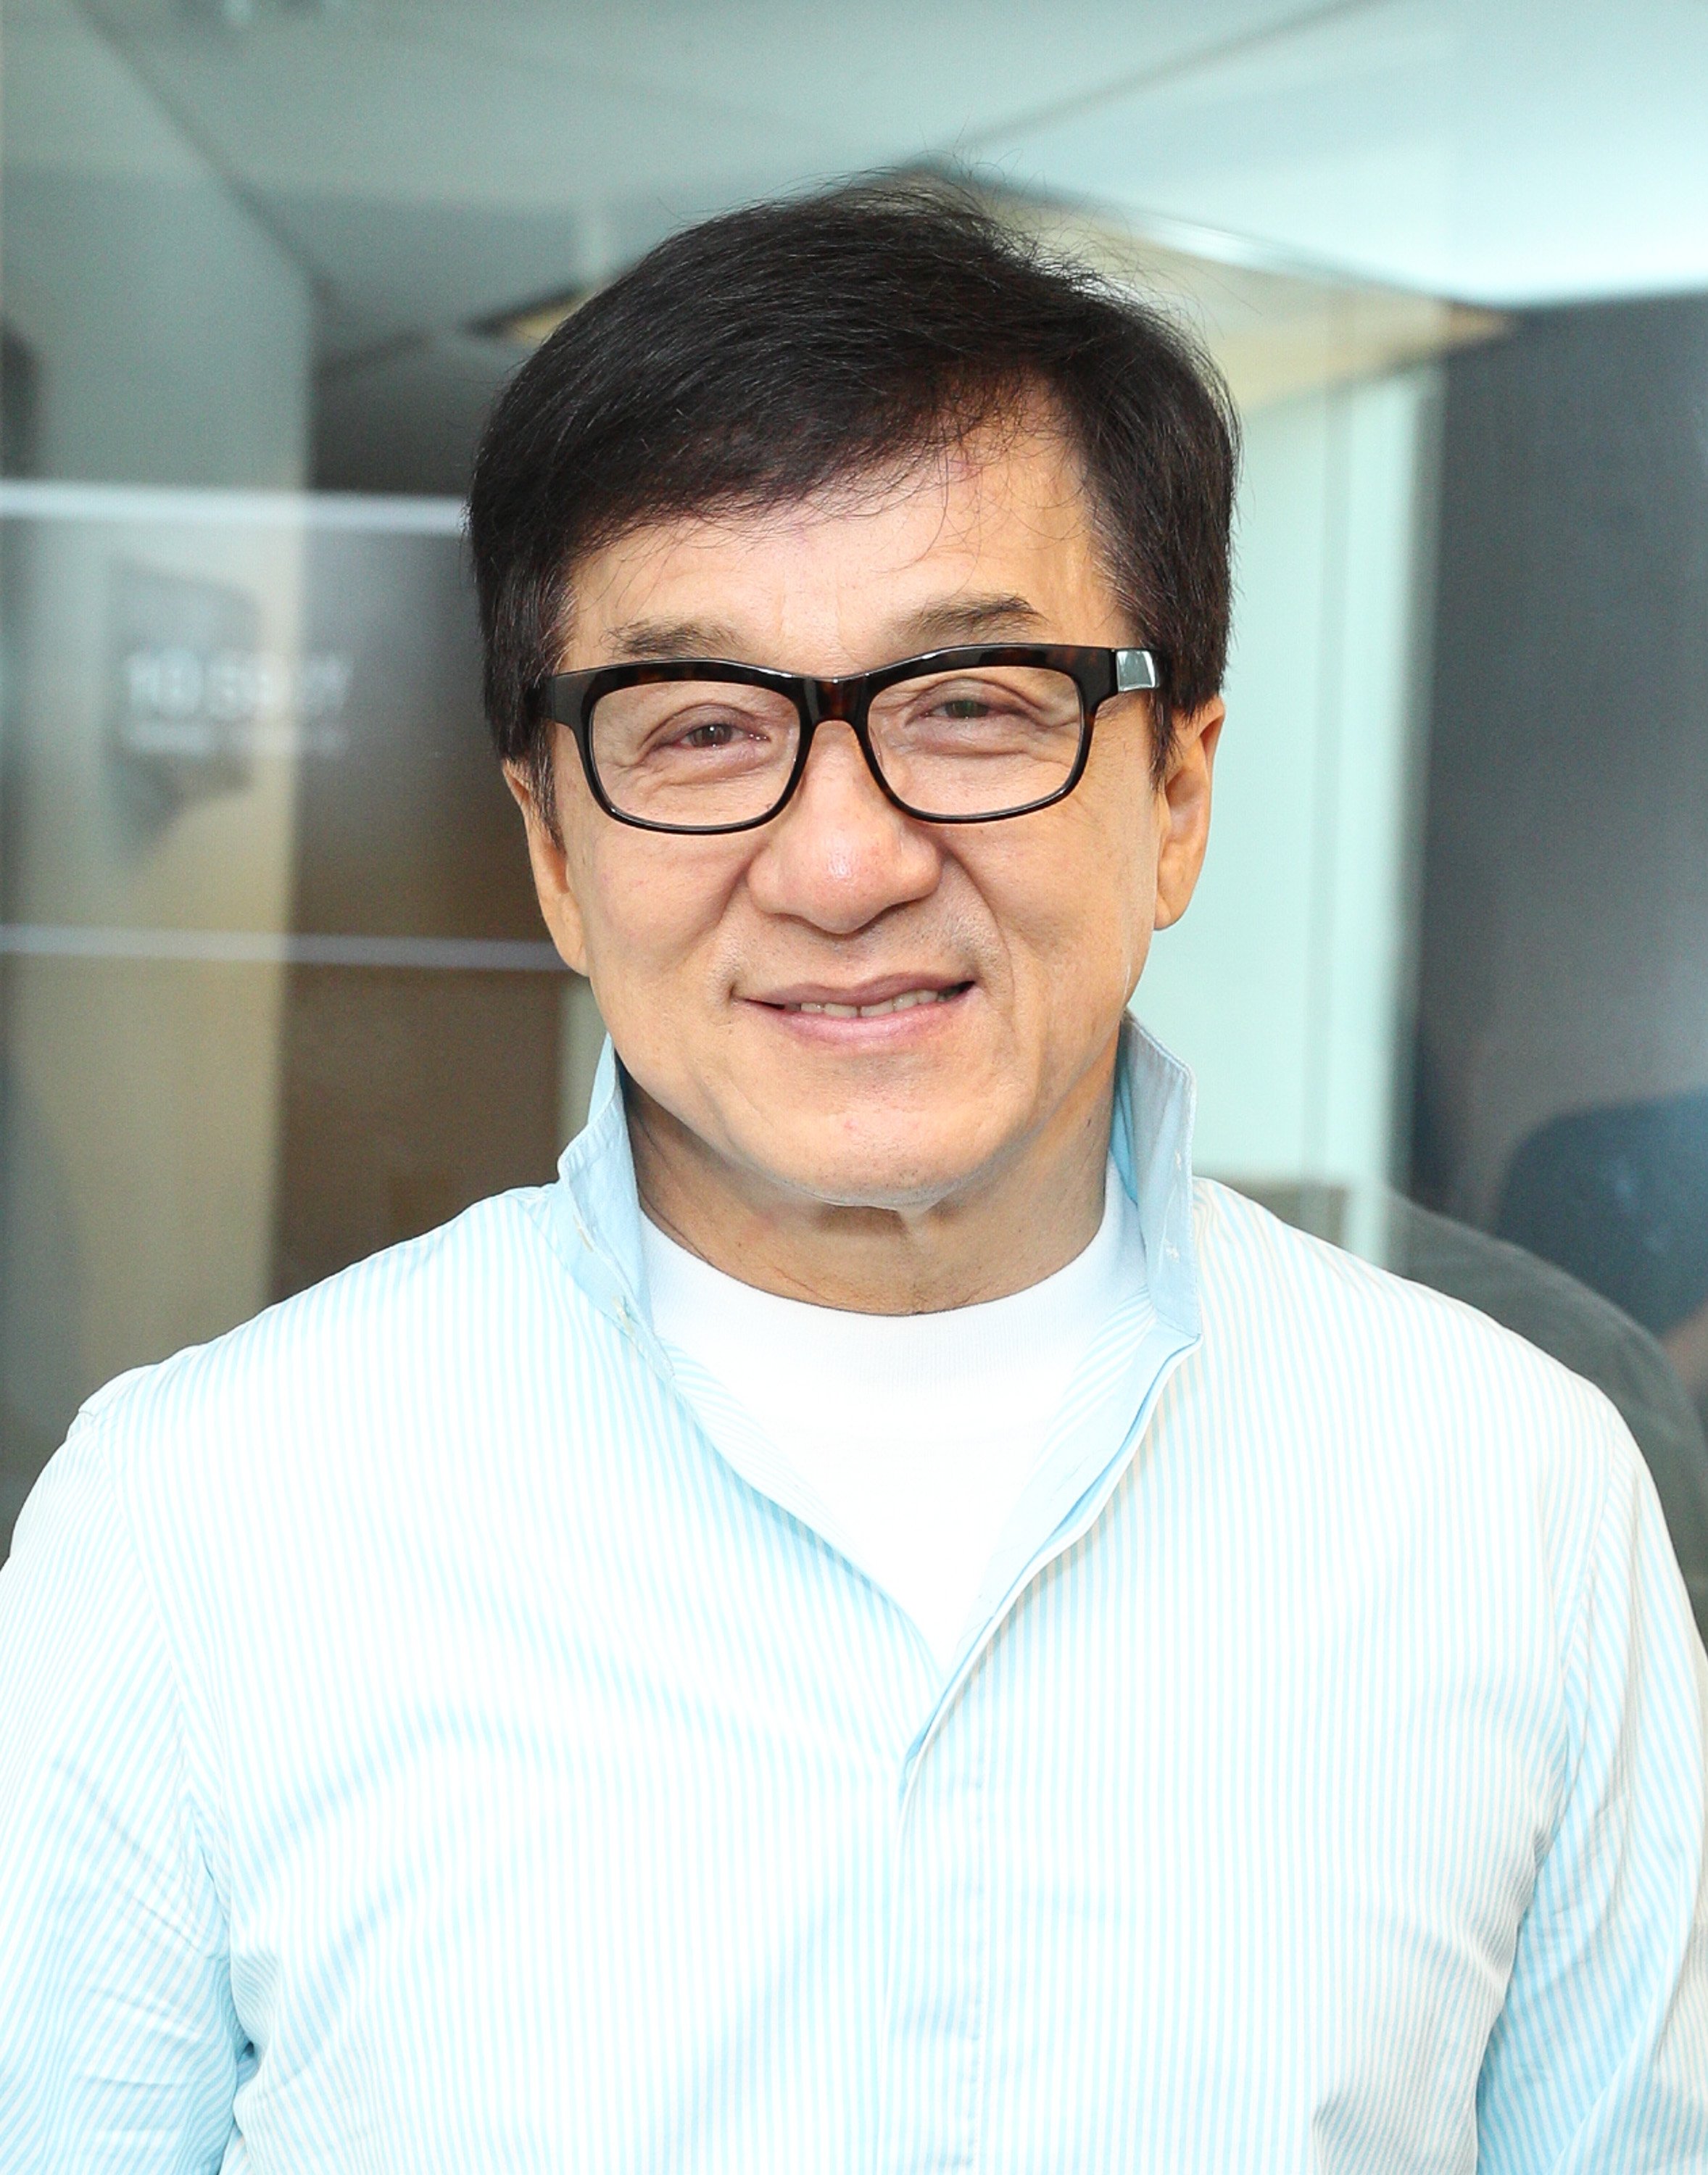 Jackie Chan en visite aux SiriusXM Studios le 10 octobre 2017 à New York | Source : Getty Images